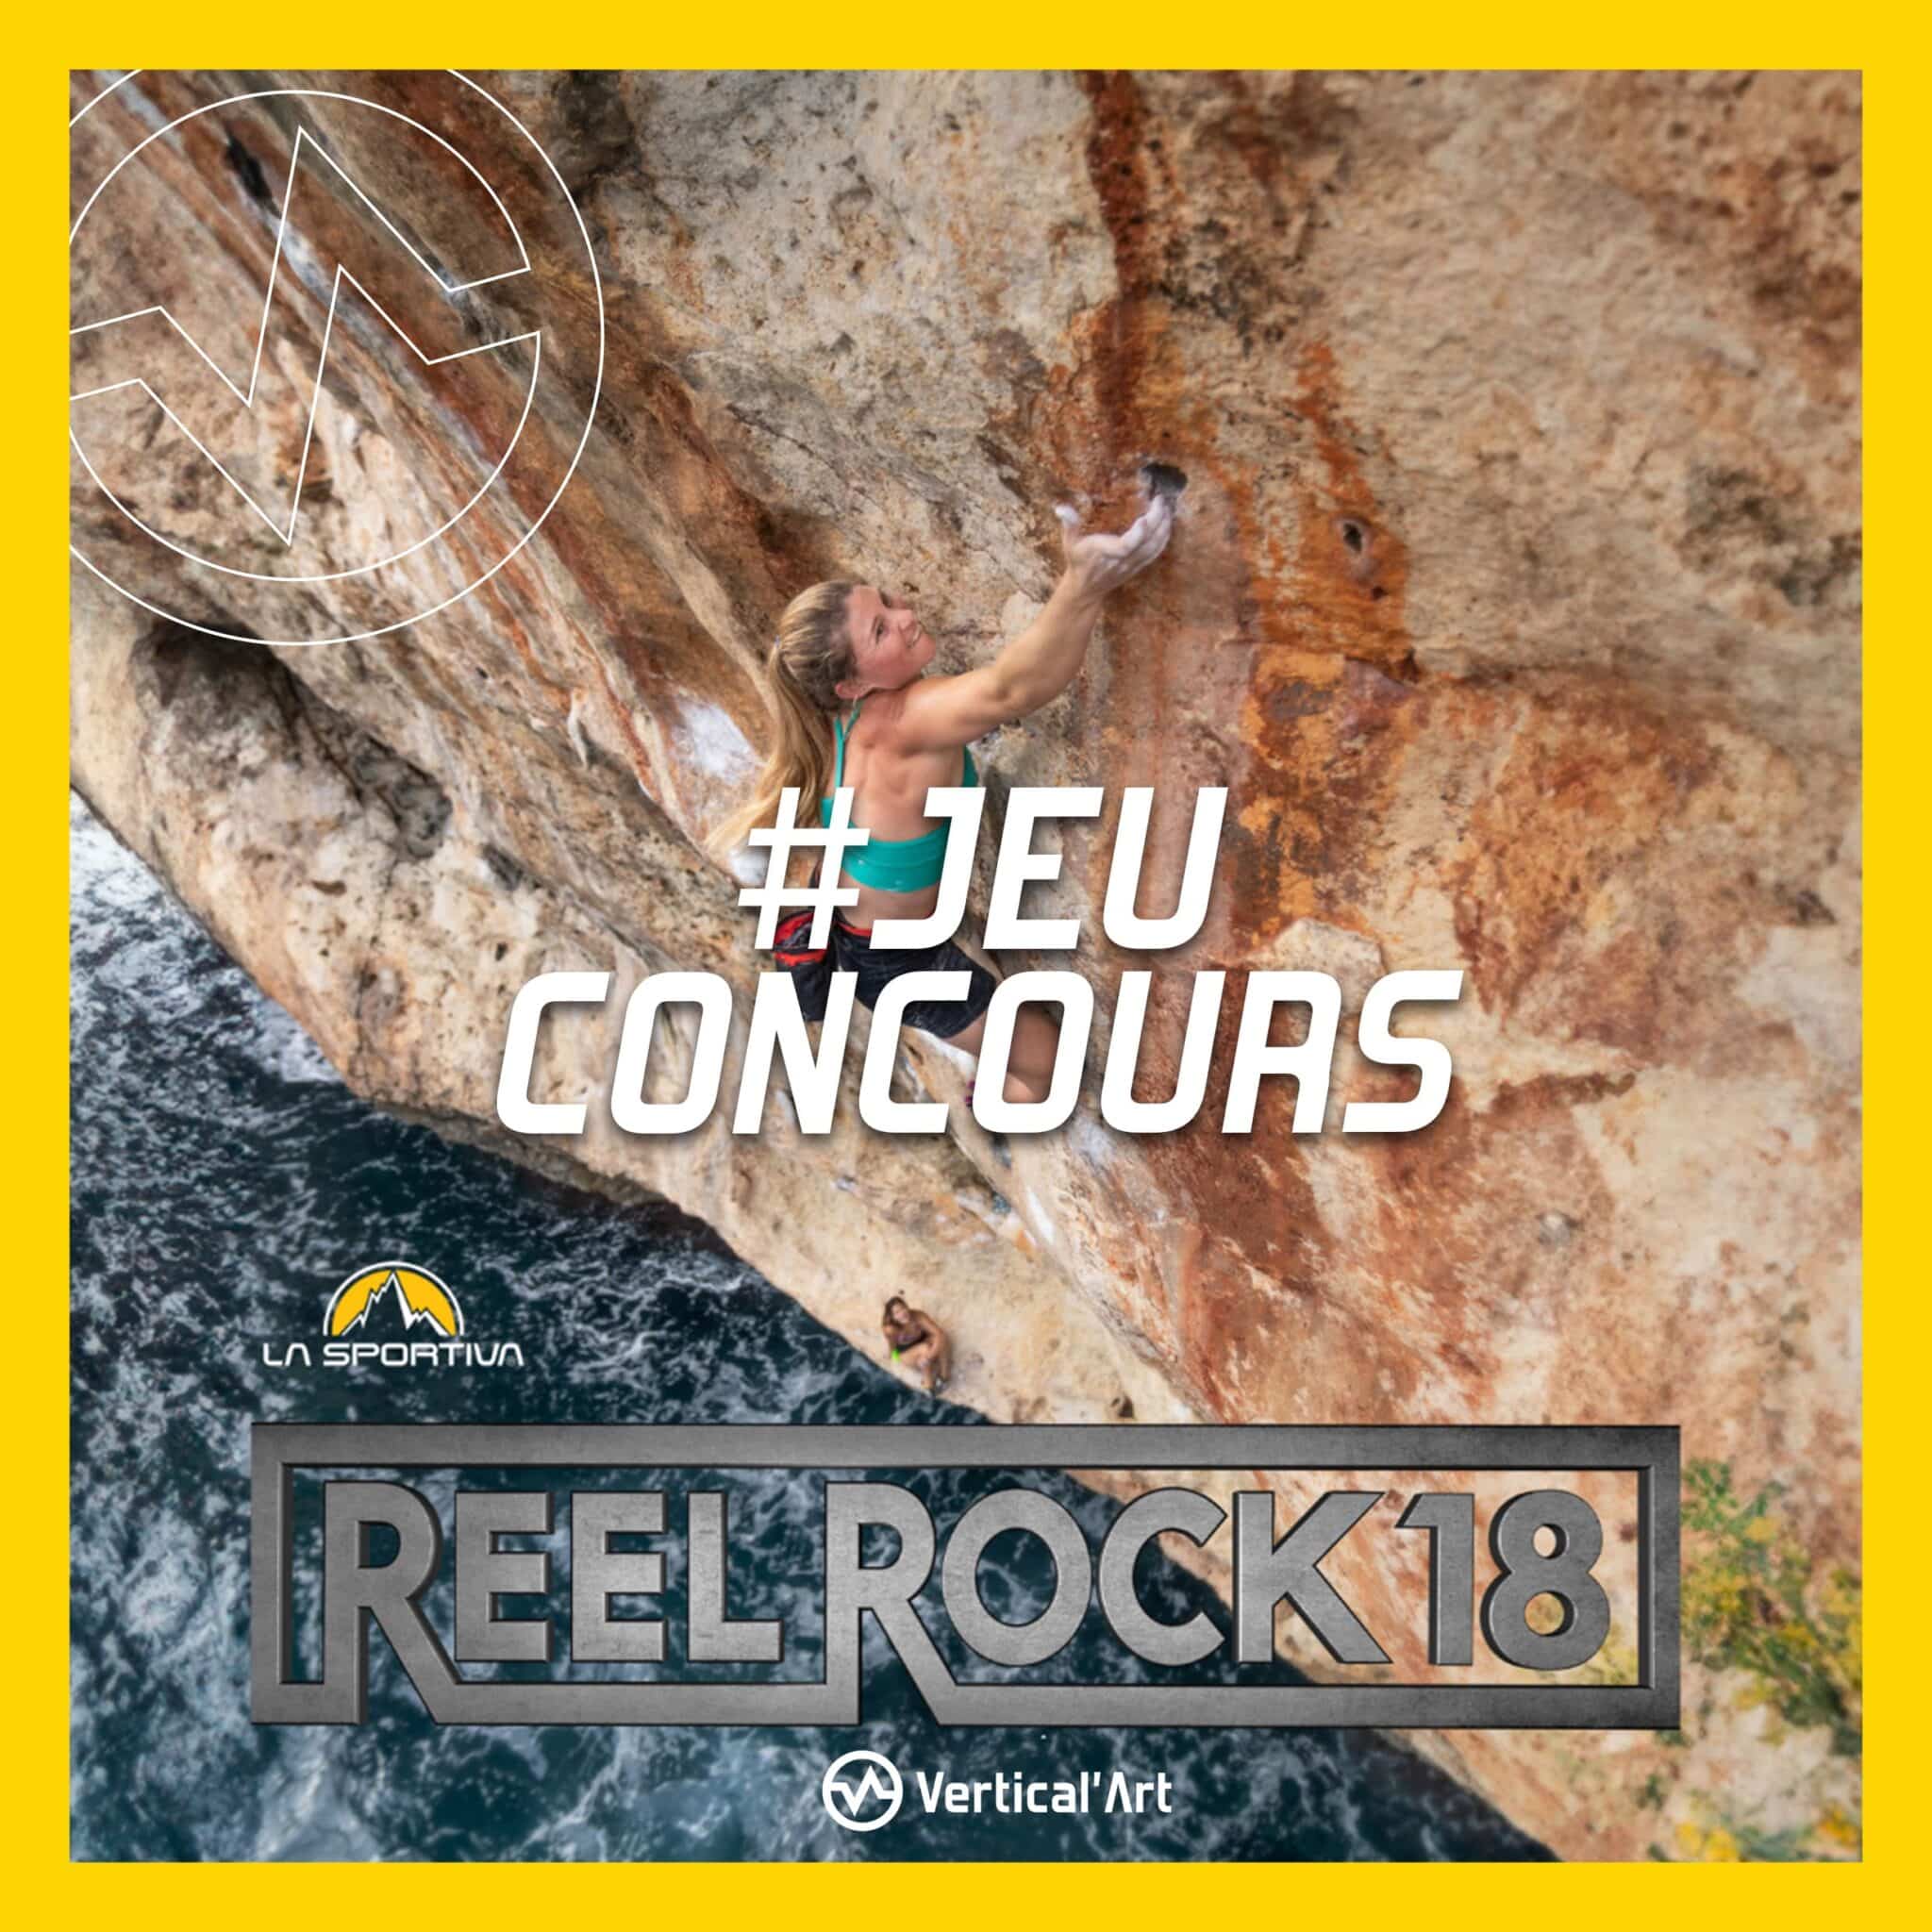 Jeu concours Instagram : Reel Rock 18 X Vertical'Art Grenoble